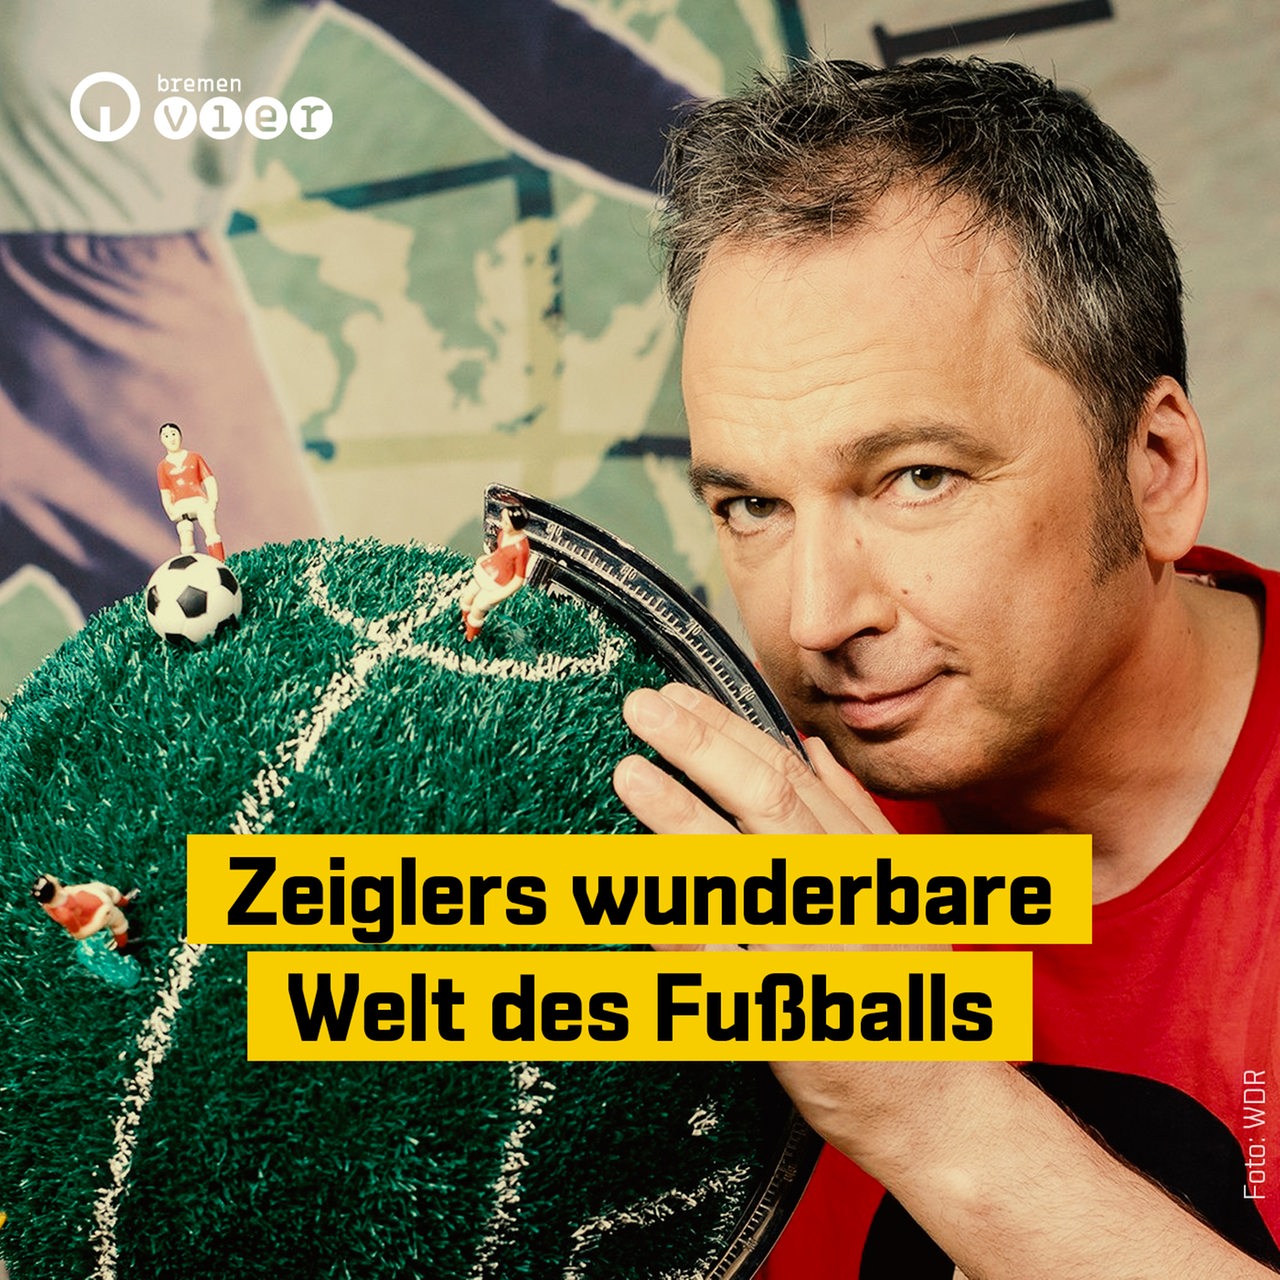 Zeiglers wunderbare Welt des Fußballs · Podcast in der ARD Audiothek